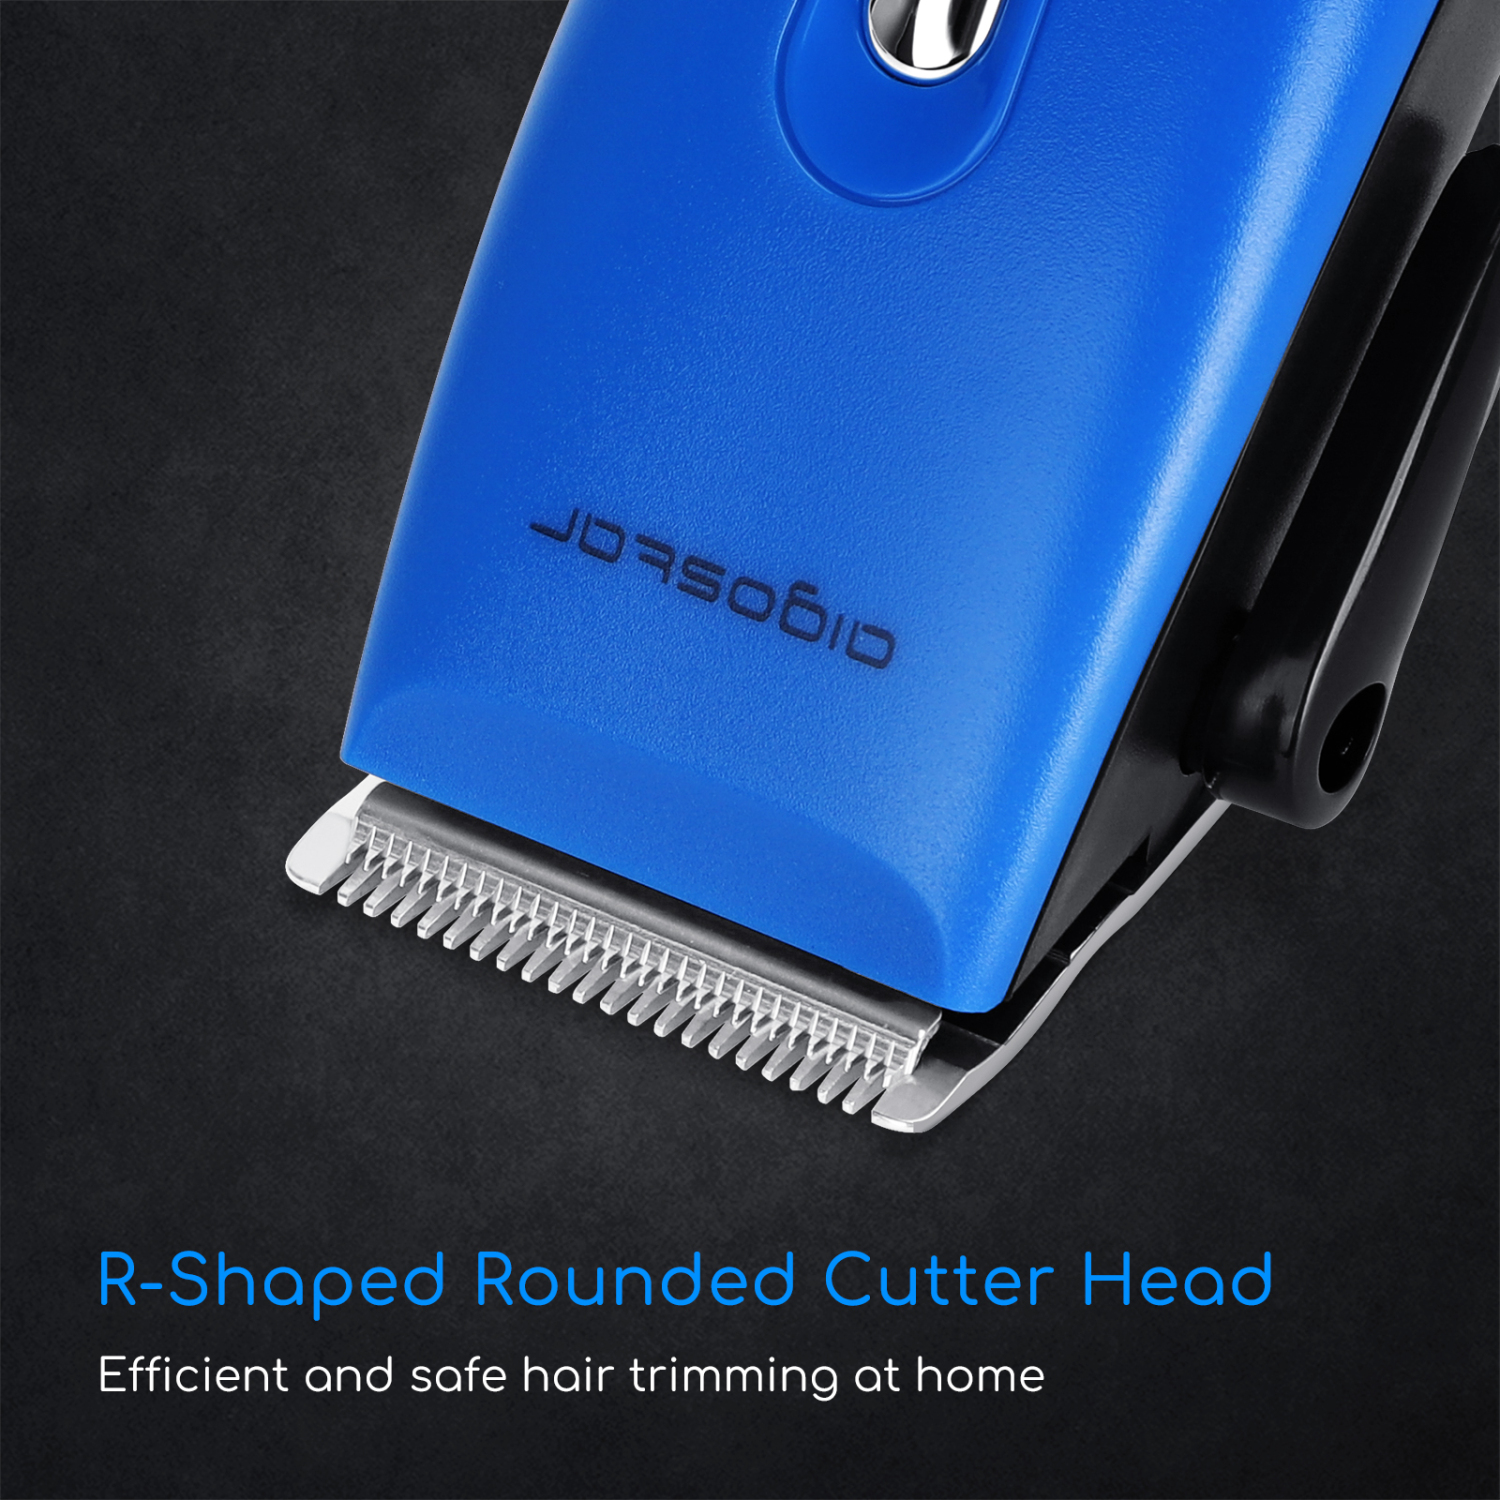 Aigostar Blueflash 32JVN - Maquinilla para cortar el pelo, incluye 4 peines guía y kit completo de mantenimiento, 15 W de potencia y 3 ajustes, cable extralargo. Color azul. Diseño exclusivo.